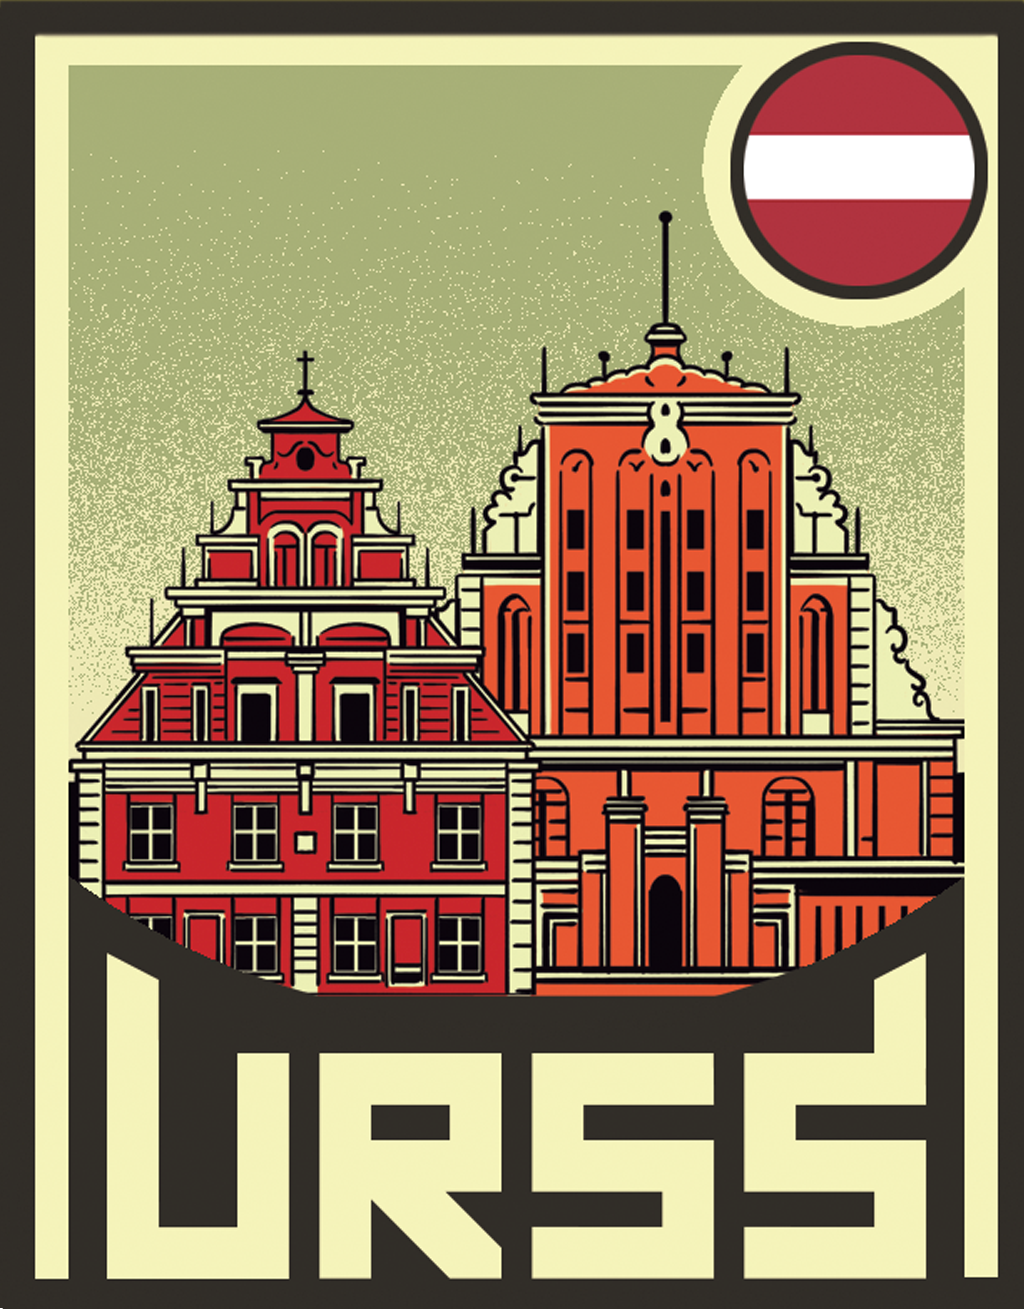 Ilustração do Centro histórico da capital Riga, na Letônia.